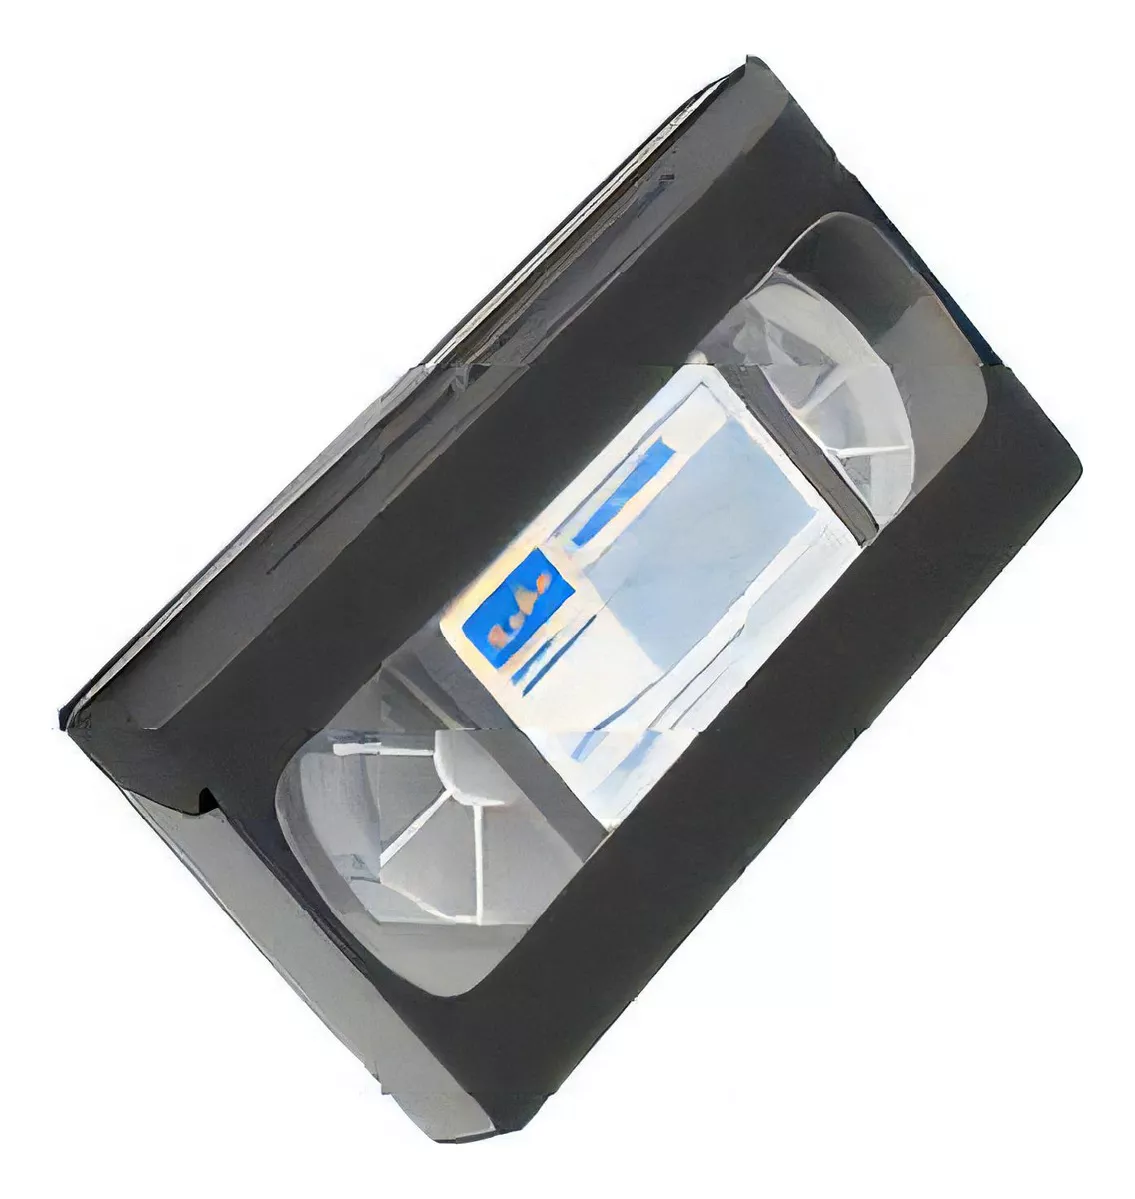 Tercera imagen para búsqueda de cassette adaptador 8mm a vhs